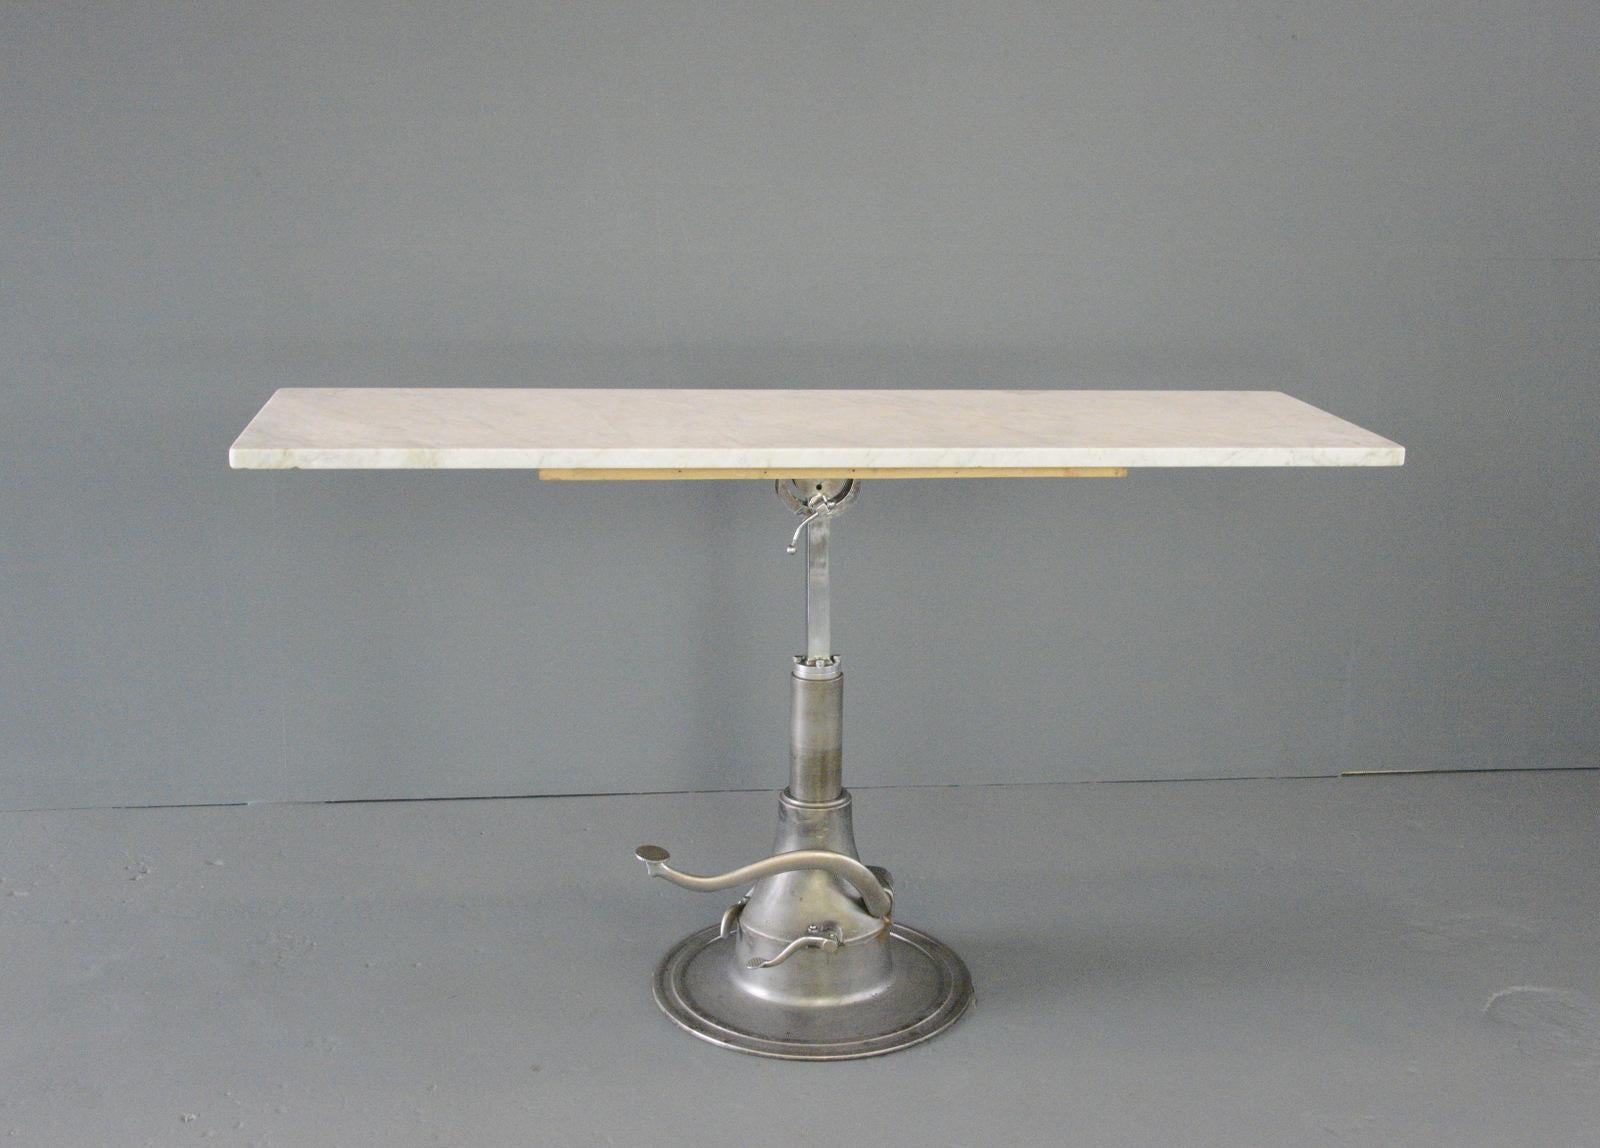 Hydraulic Examination-Tisch mit Marmorplatte, ca. 1930er Jahre

- Sockel aus Gusseisen
- Platte aus massivem Carrara-Marmor
- 360° drehbar und höhenverstellbar
- Neigungen
- Englisch ~ 1930er Jahre
- 183cm breit x 56cm tief
- 83cm - 107cm